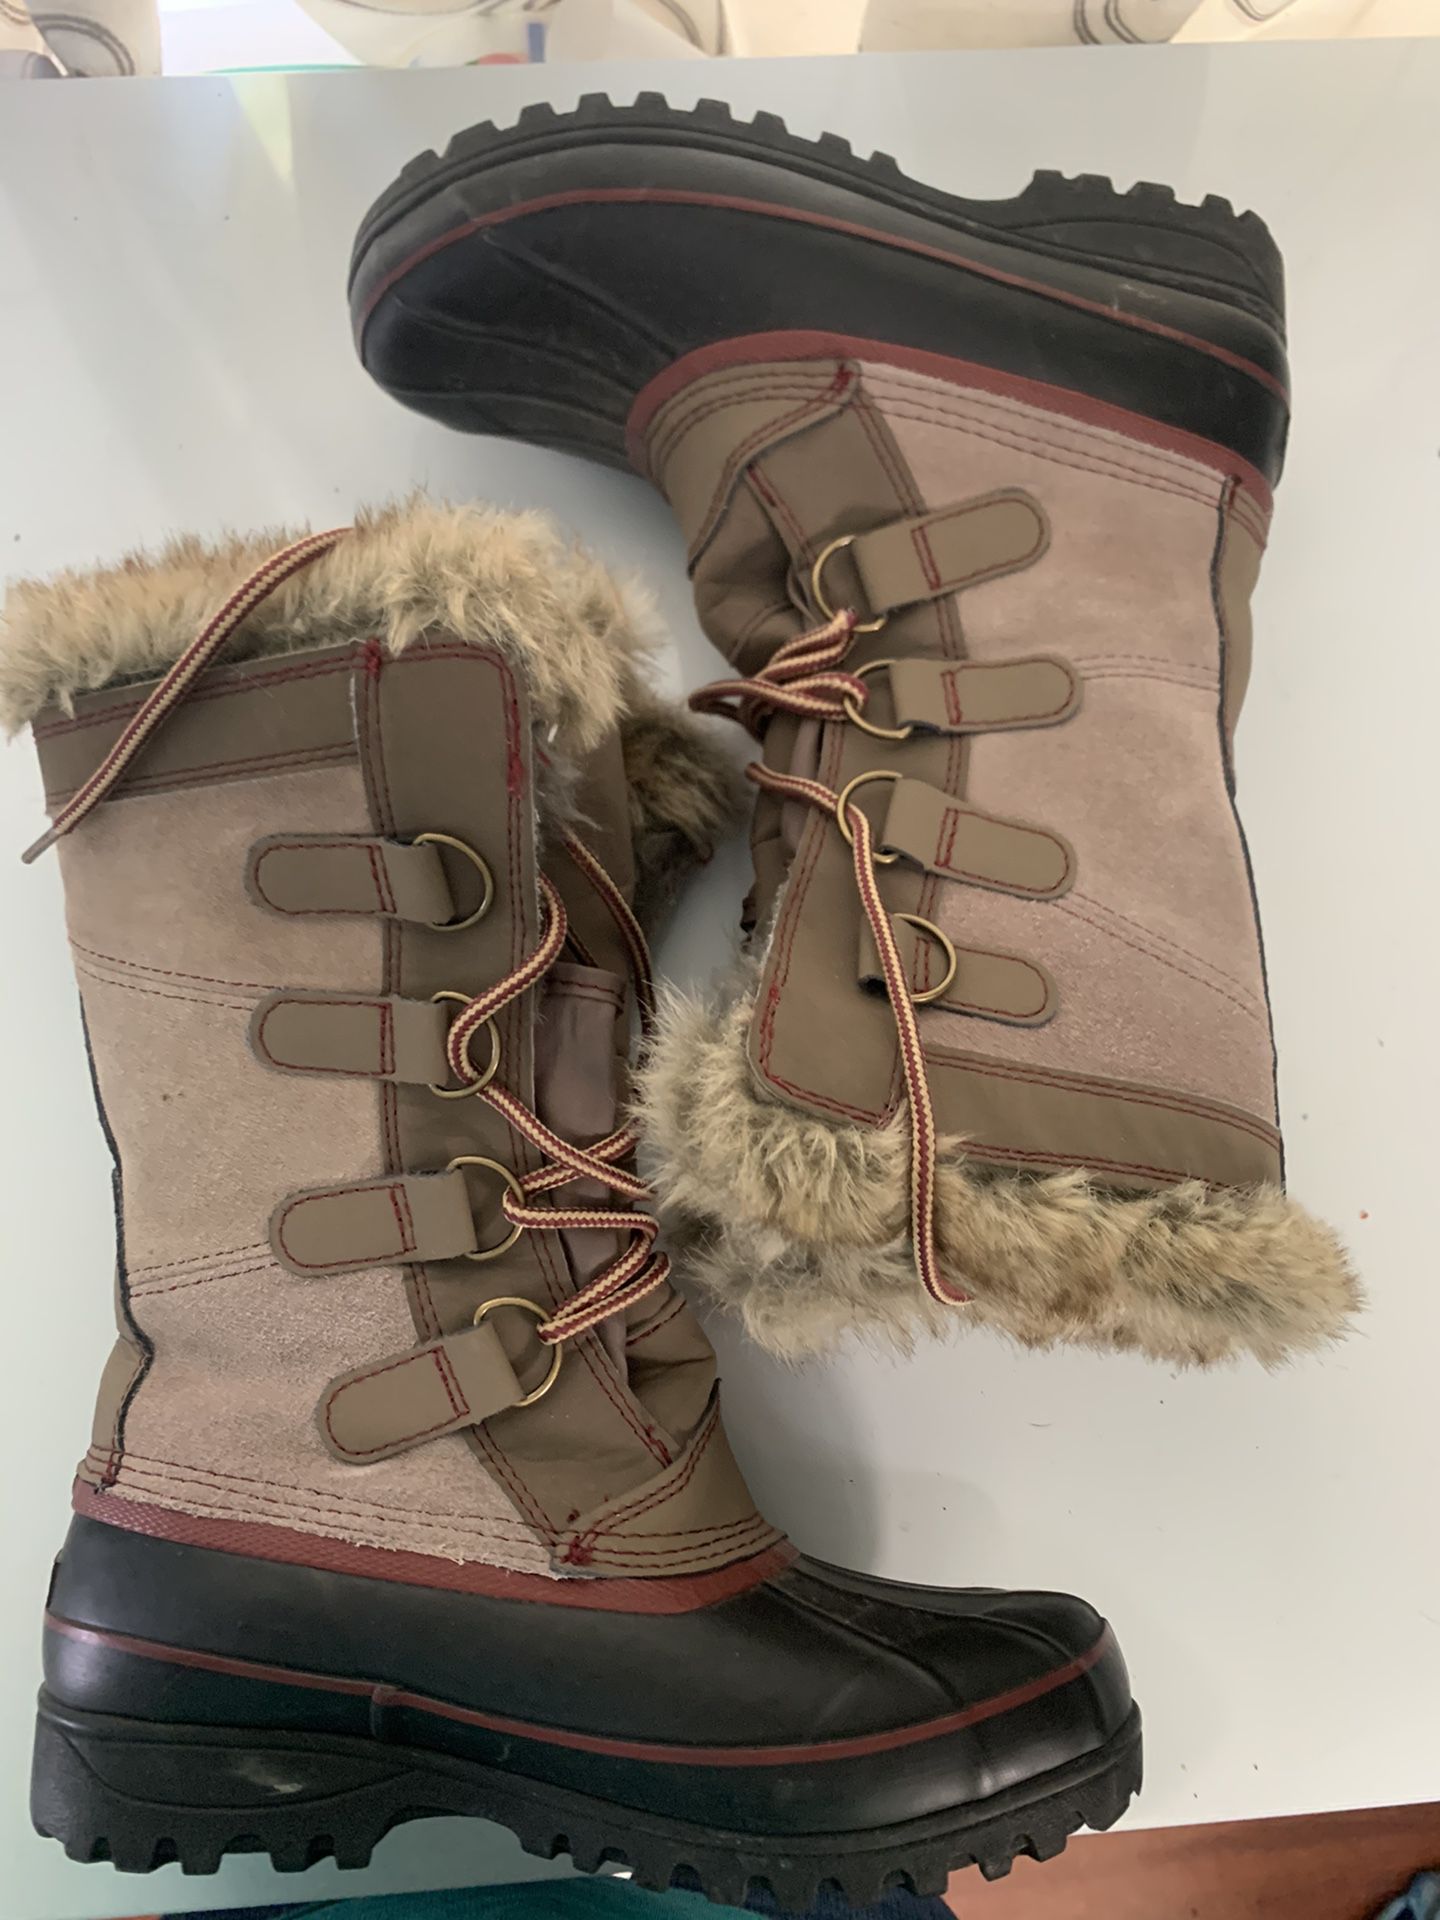 Khombu size 6 snow boots women’s